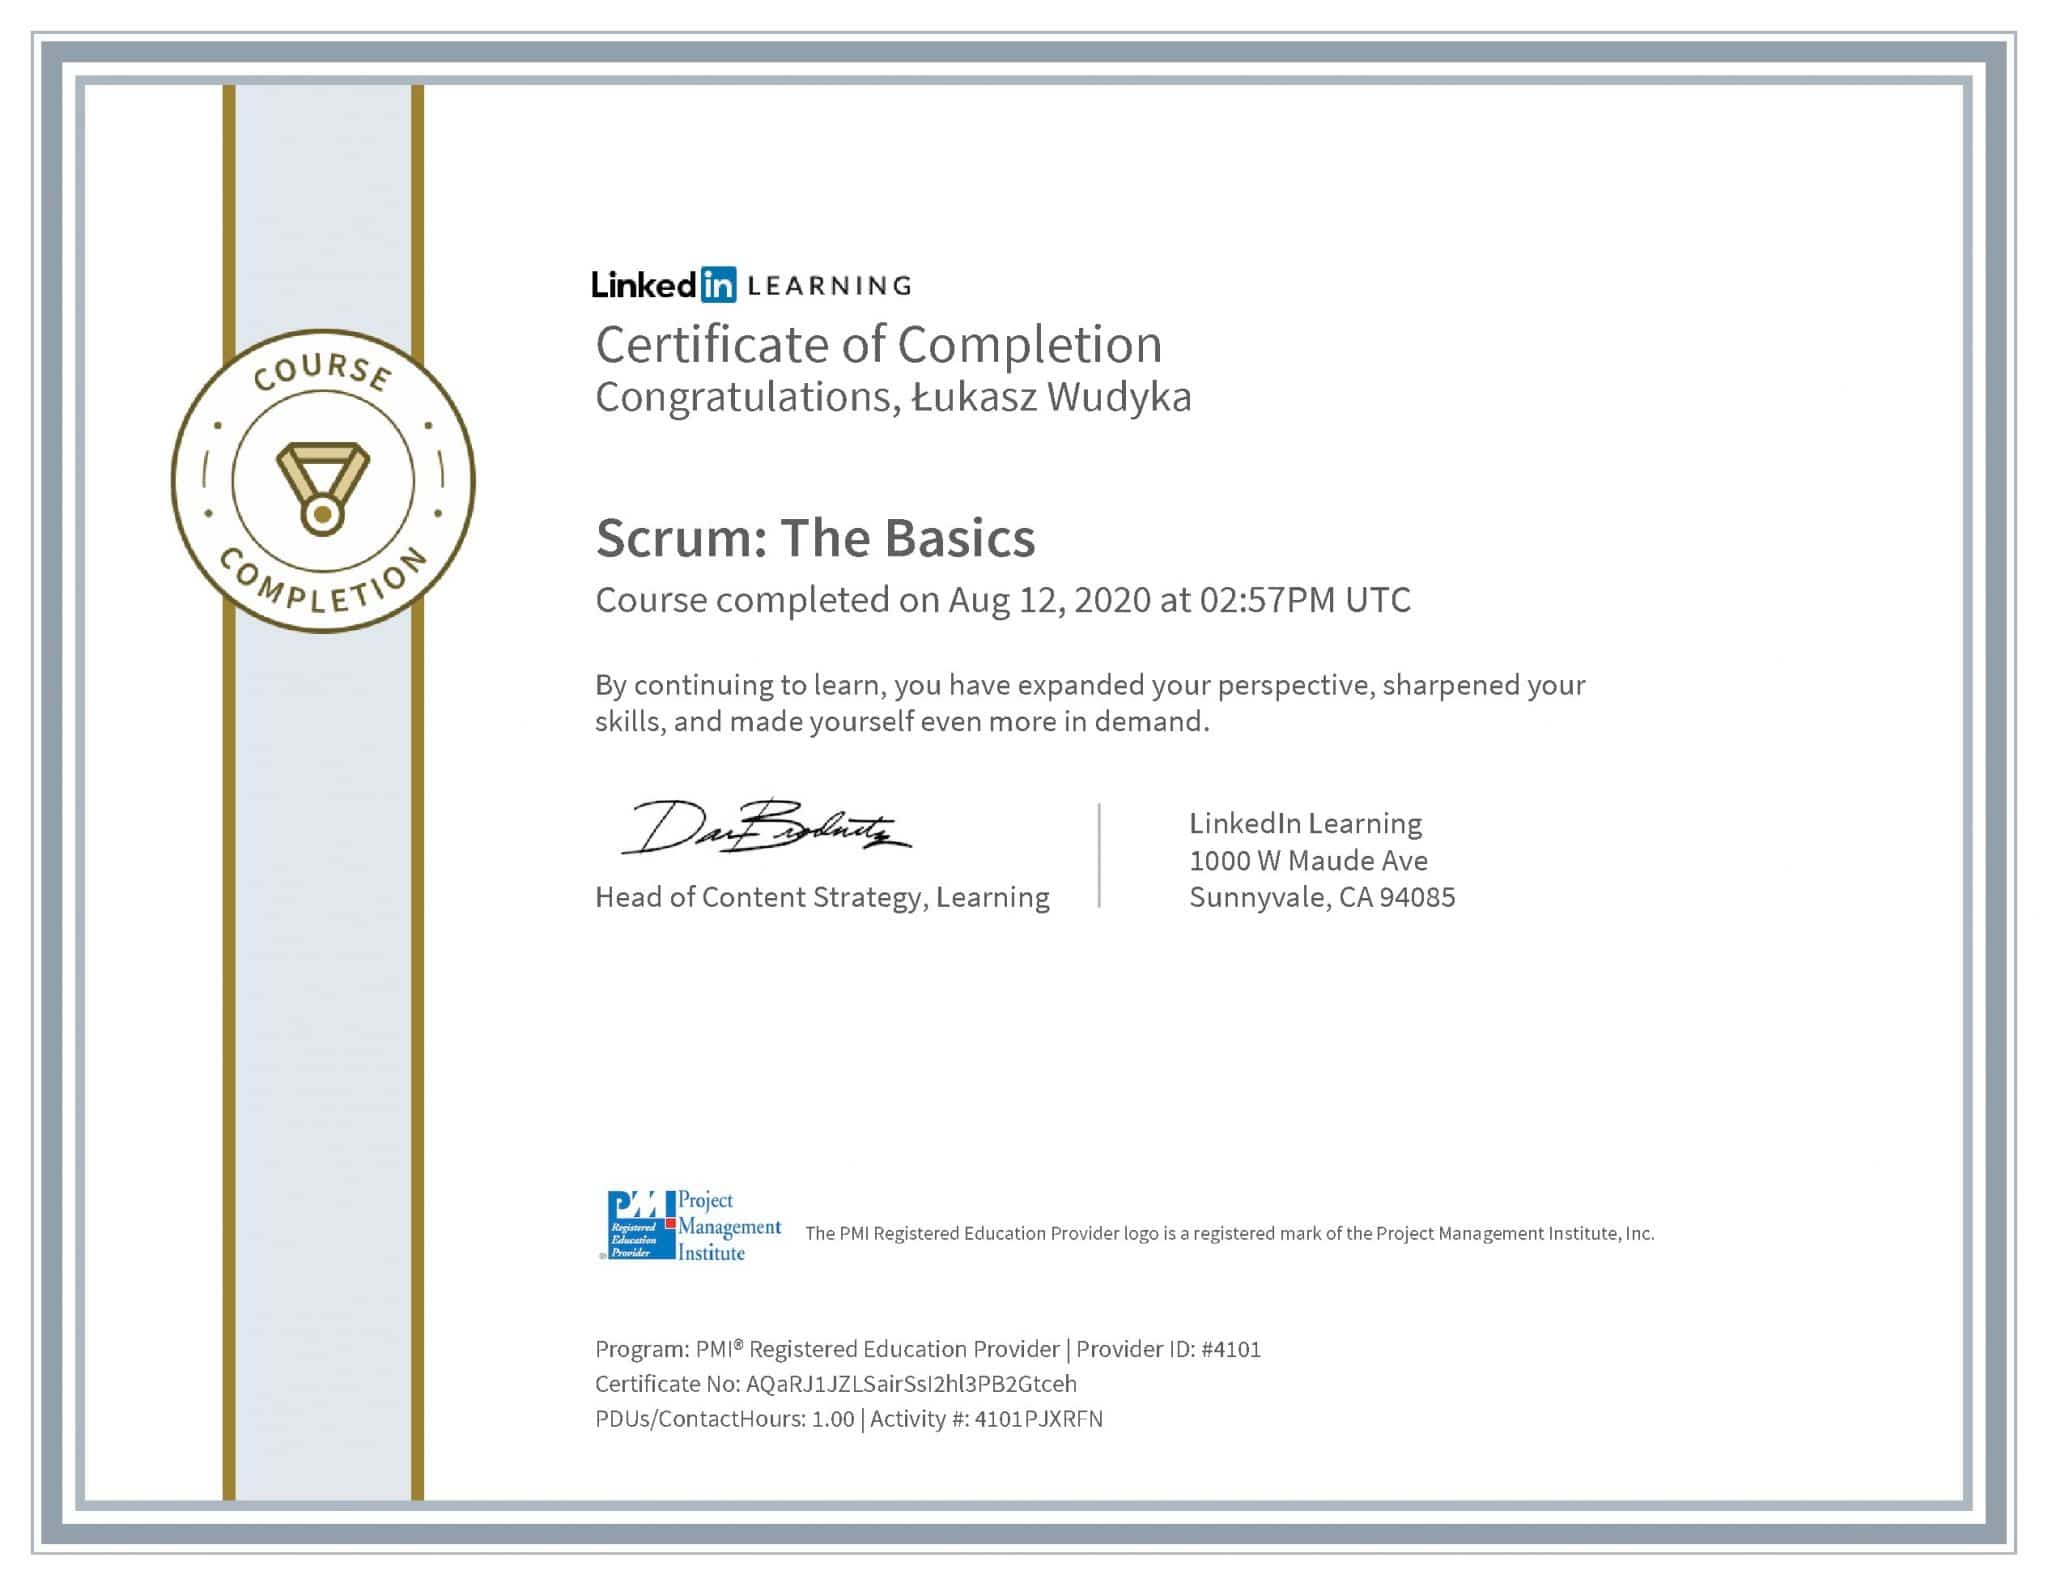 Łukasz Wudyka certyfikat LinkedIn Scrum: The Basics PMI